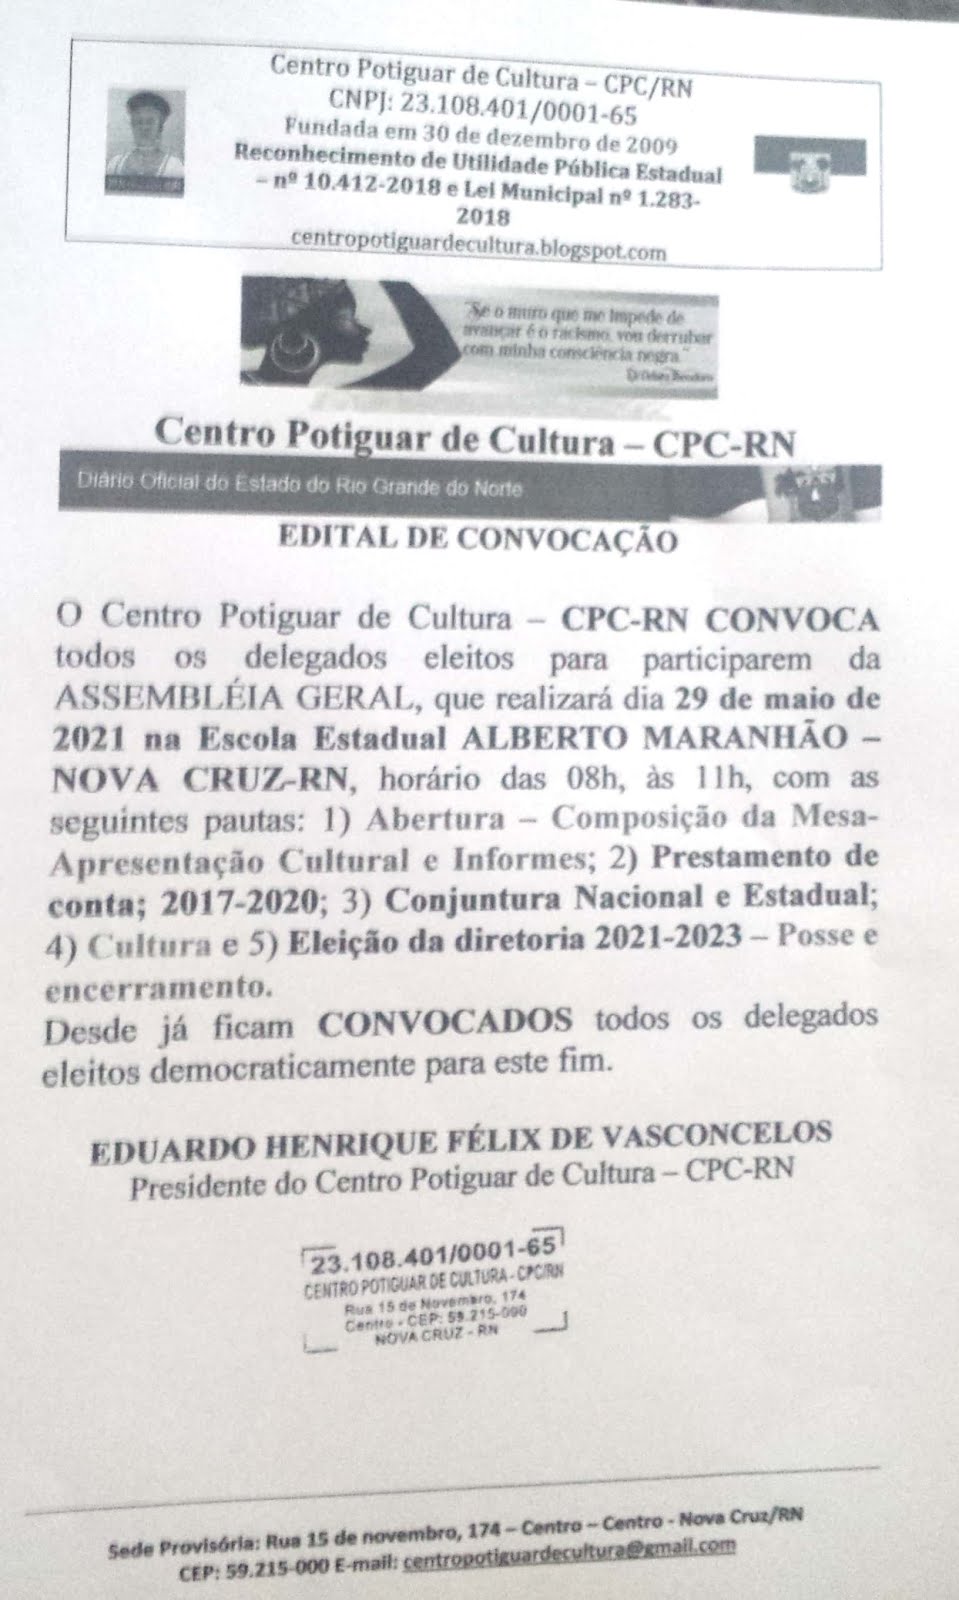 EDITAL DE CONVOCAÇÃO DA ASSEMBLÉIA GERAL DO CENTRO POTIGUAR DE CULTURA - CPC-RN